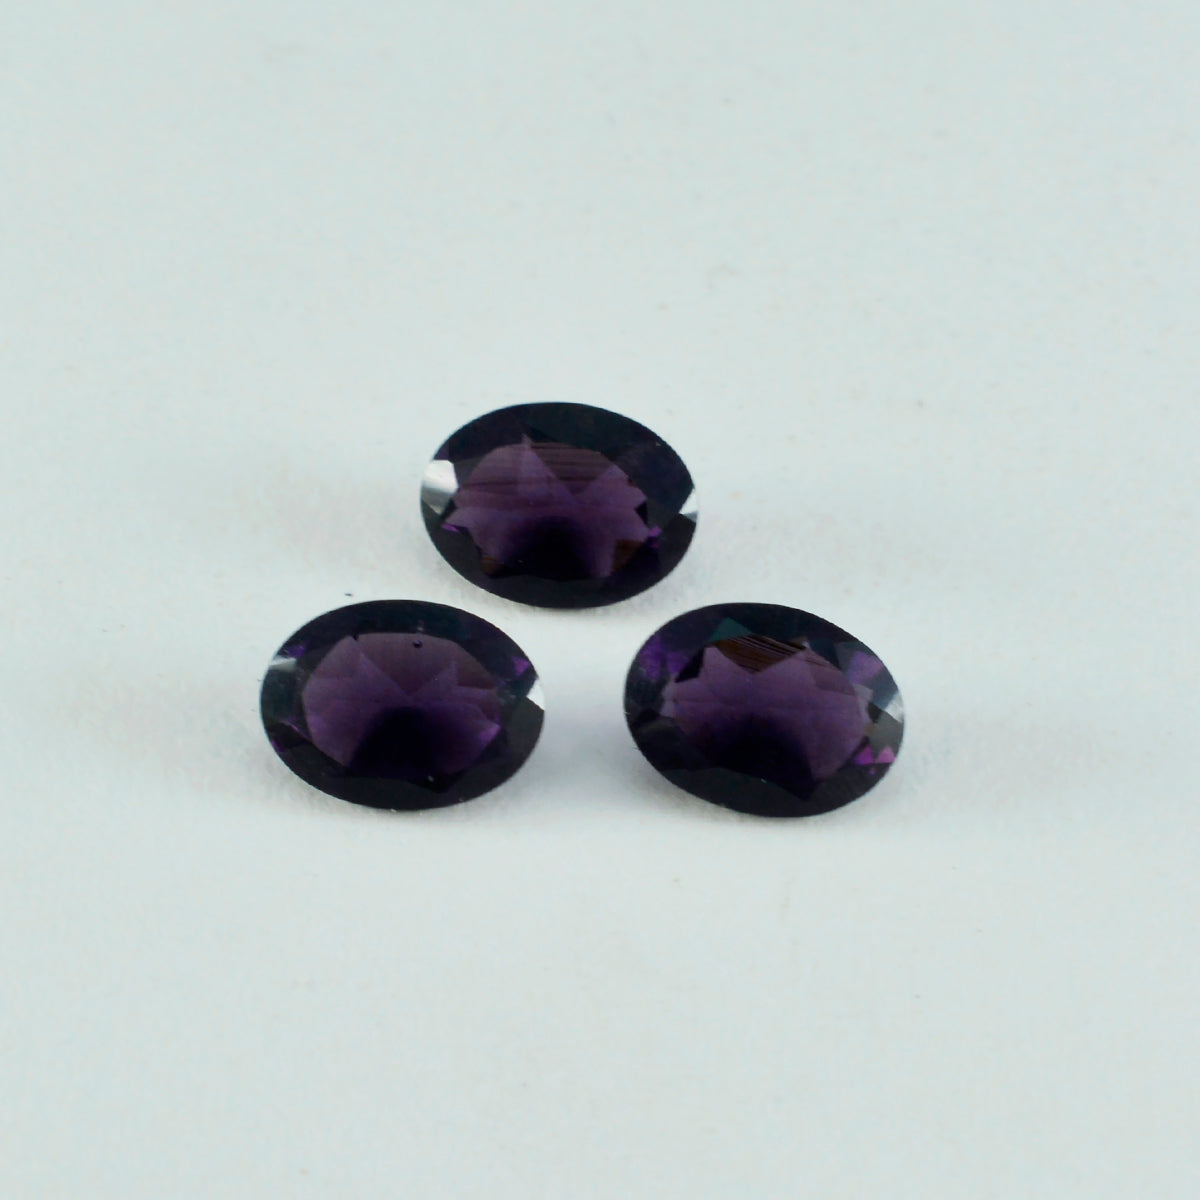 Riyogems 1 Stück violetter Amethyst mit CZ, facettiert, 7 x 9 mm, ovale Form, verblüffender Qualitätsstein